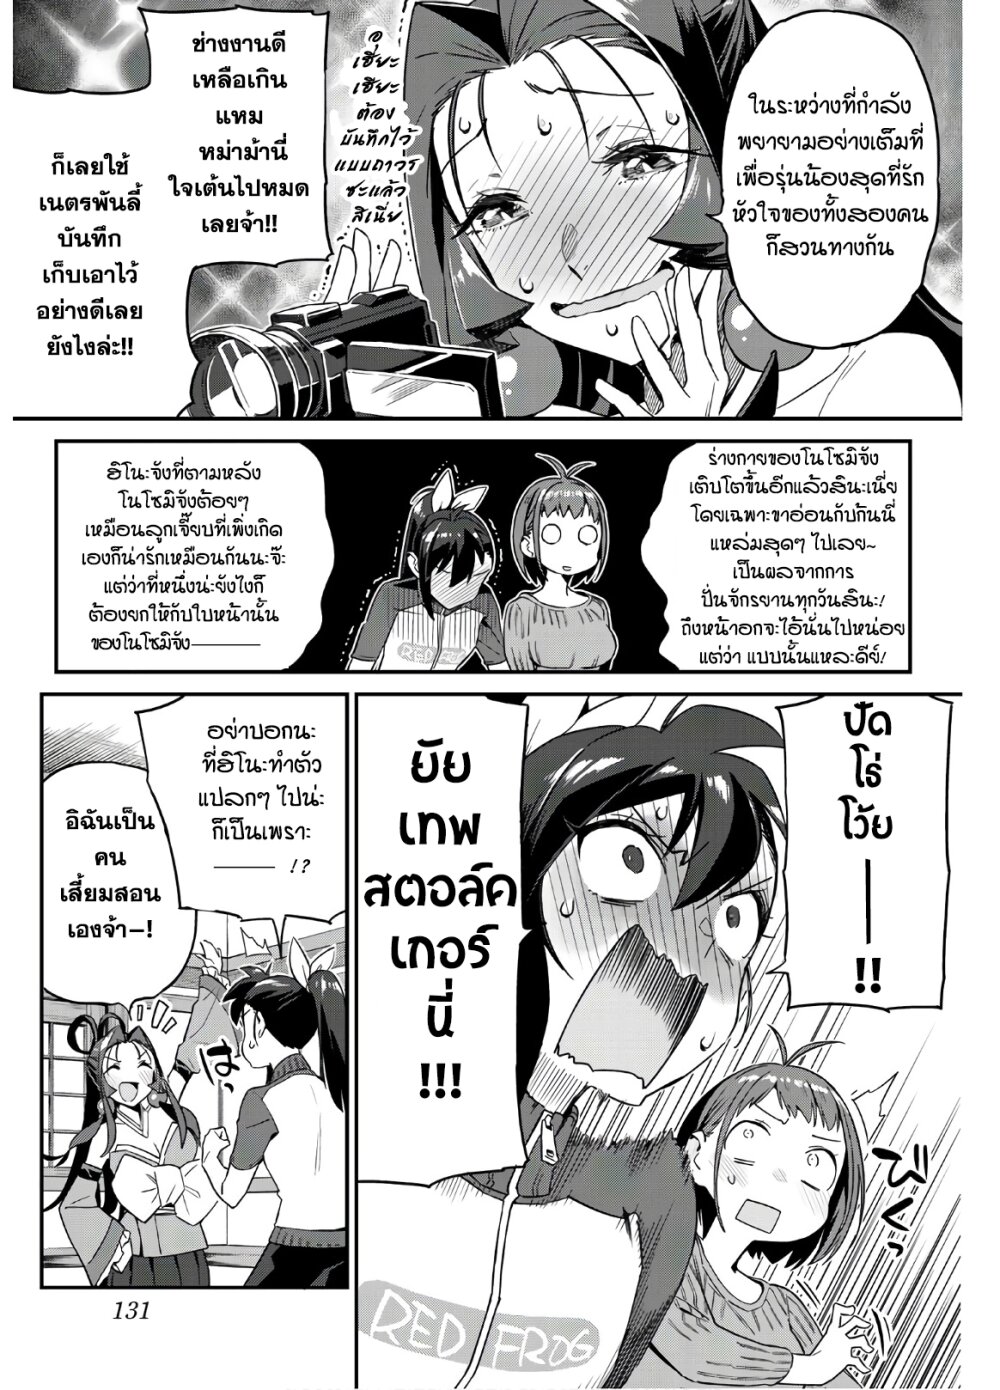 Youkai Izakaya non Bere ke - หน้า 5